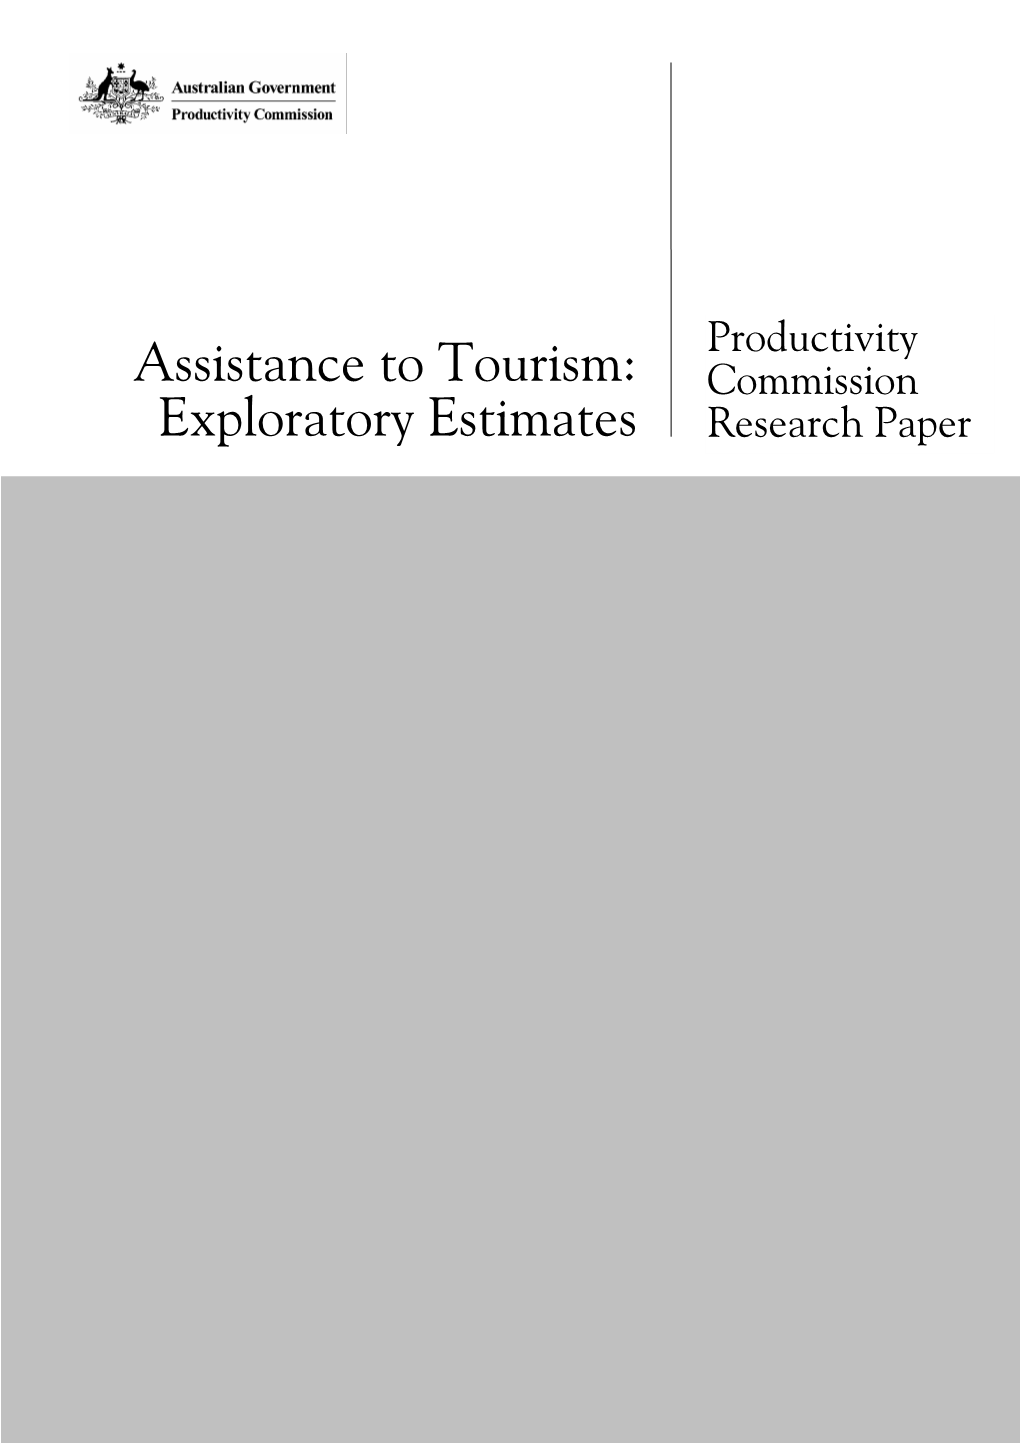 Assistance to Tourism: Exploratory Estimates, Commission Research Paper, Canberra, April